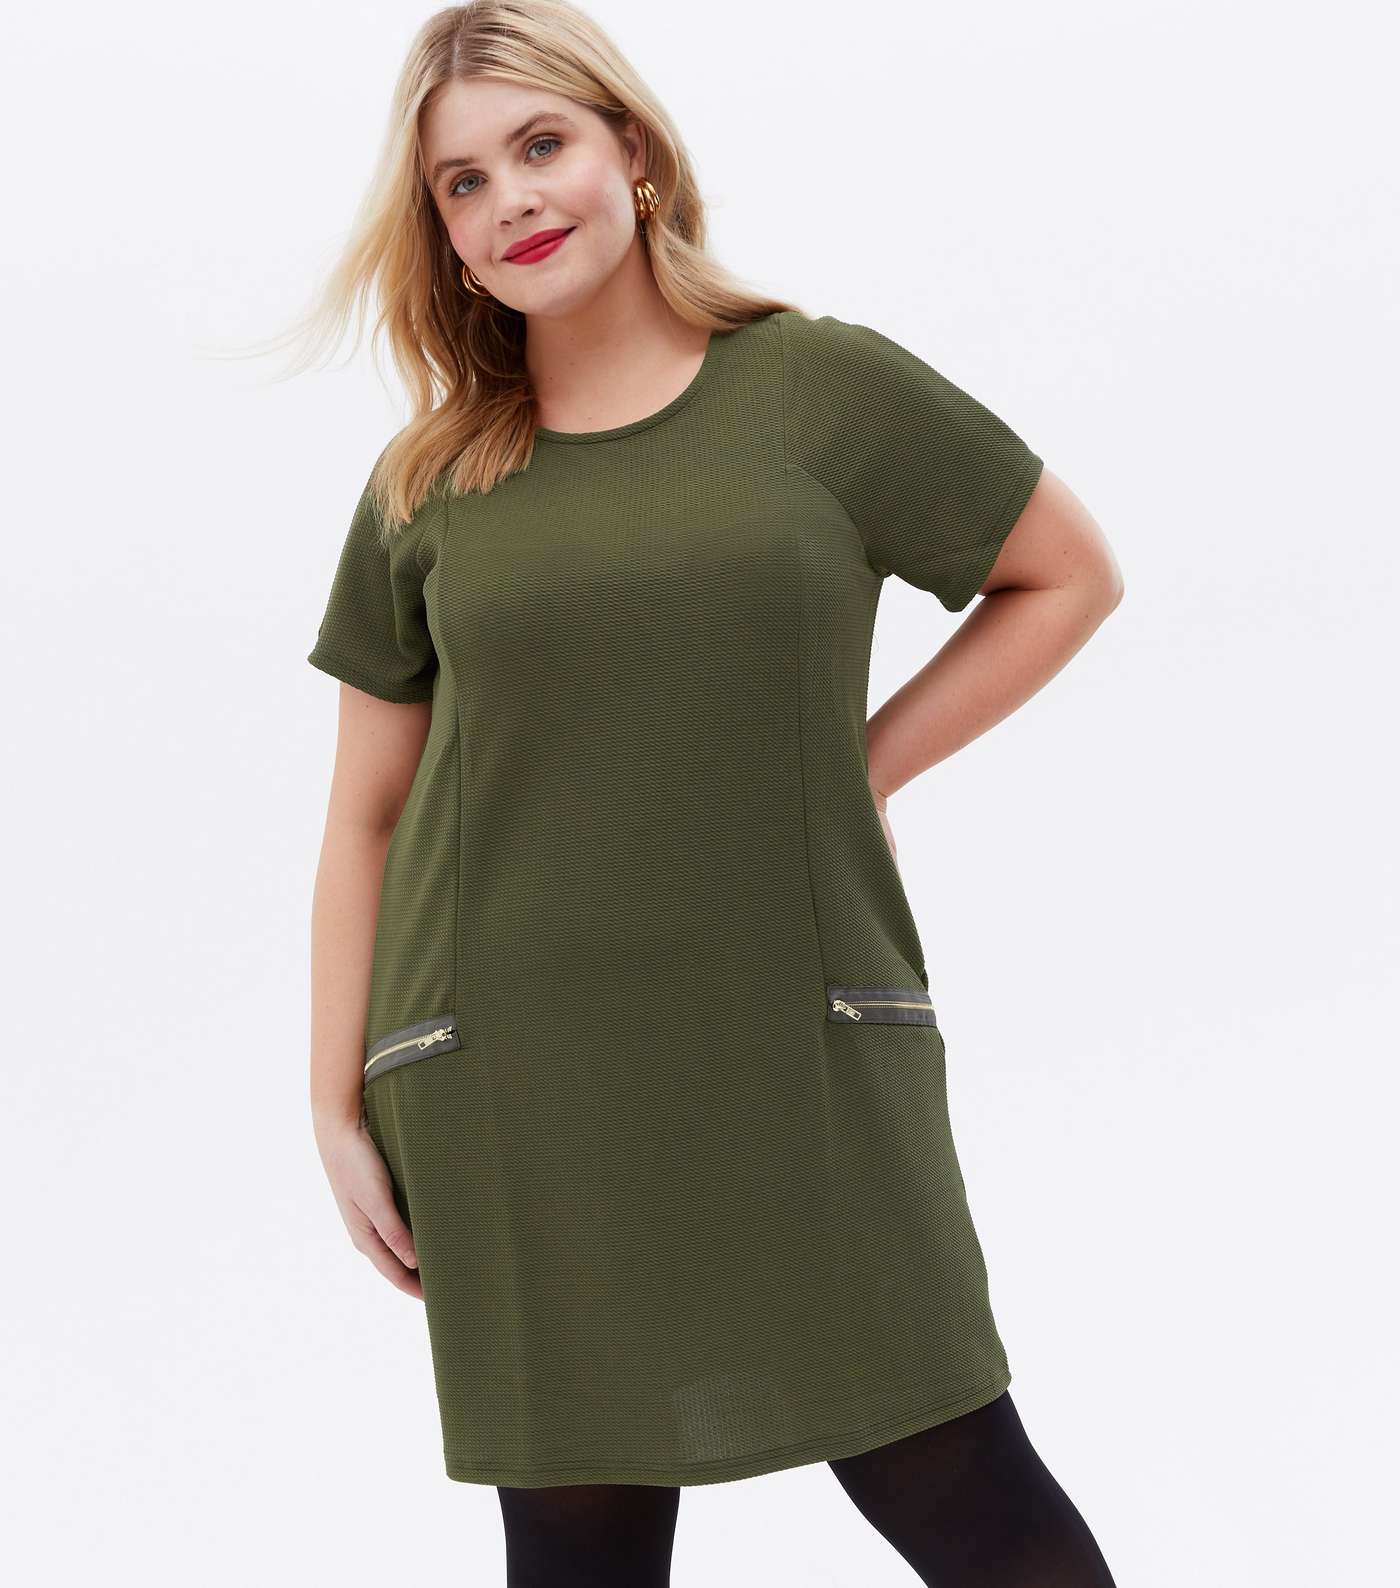 Mela Curves Olive Textured Zip Shift Dress Image 2